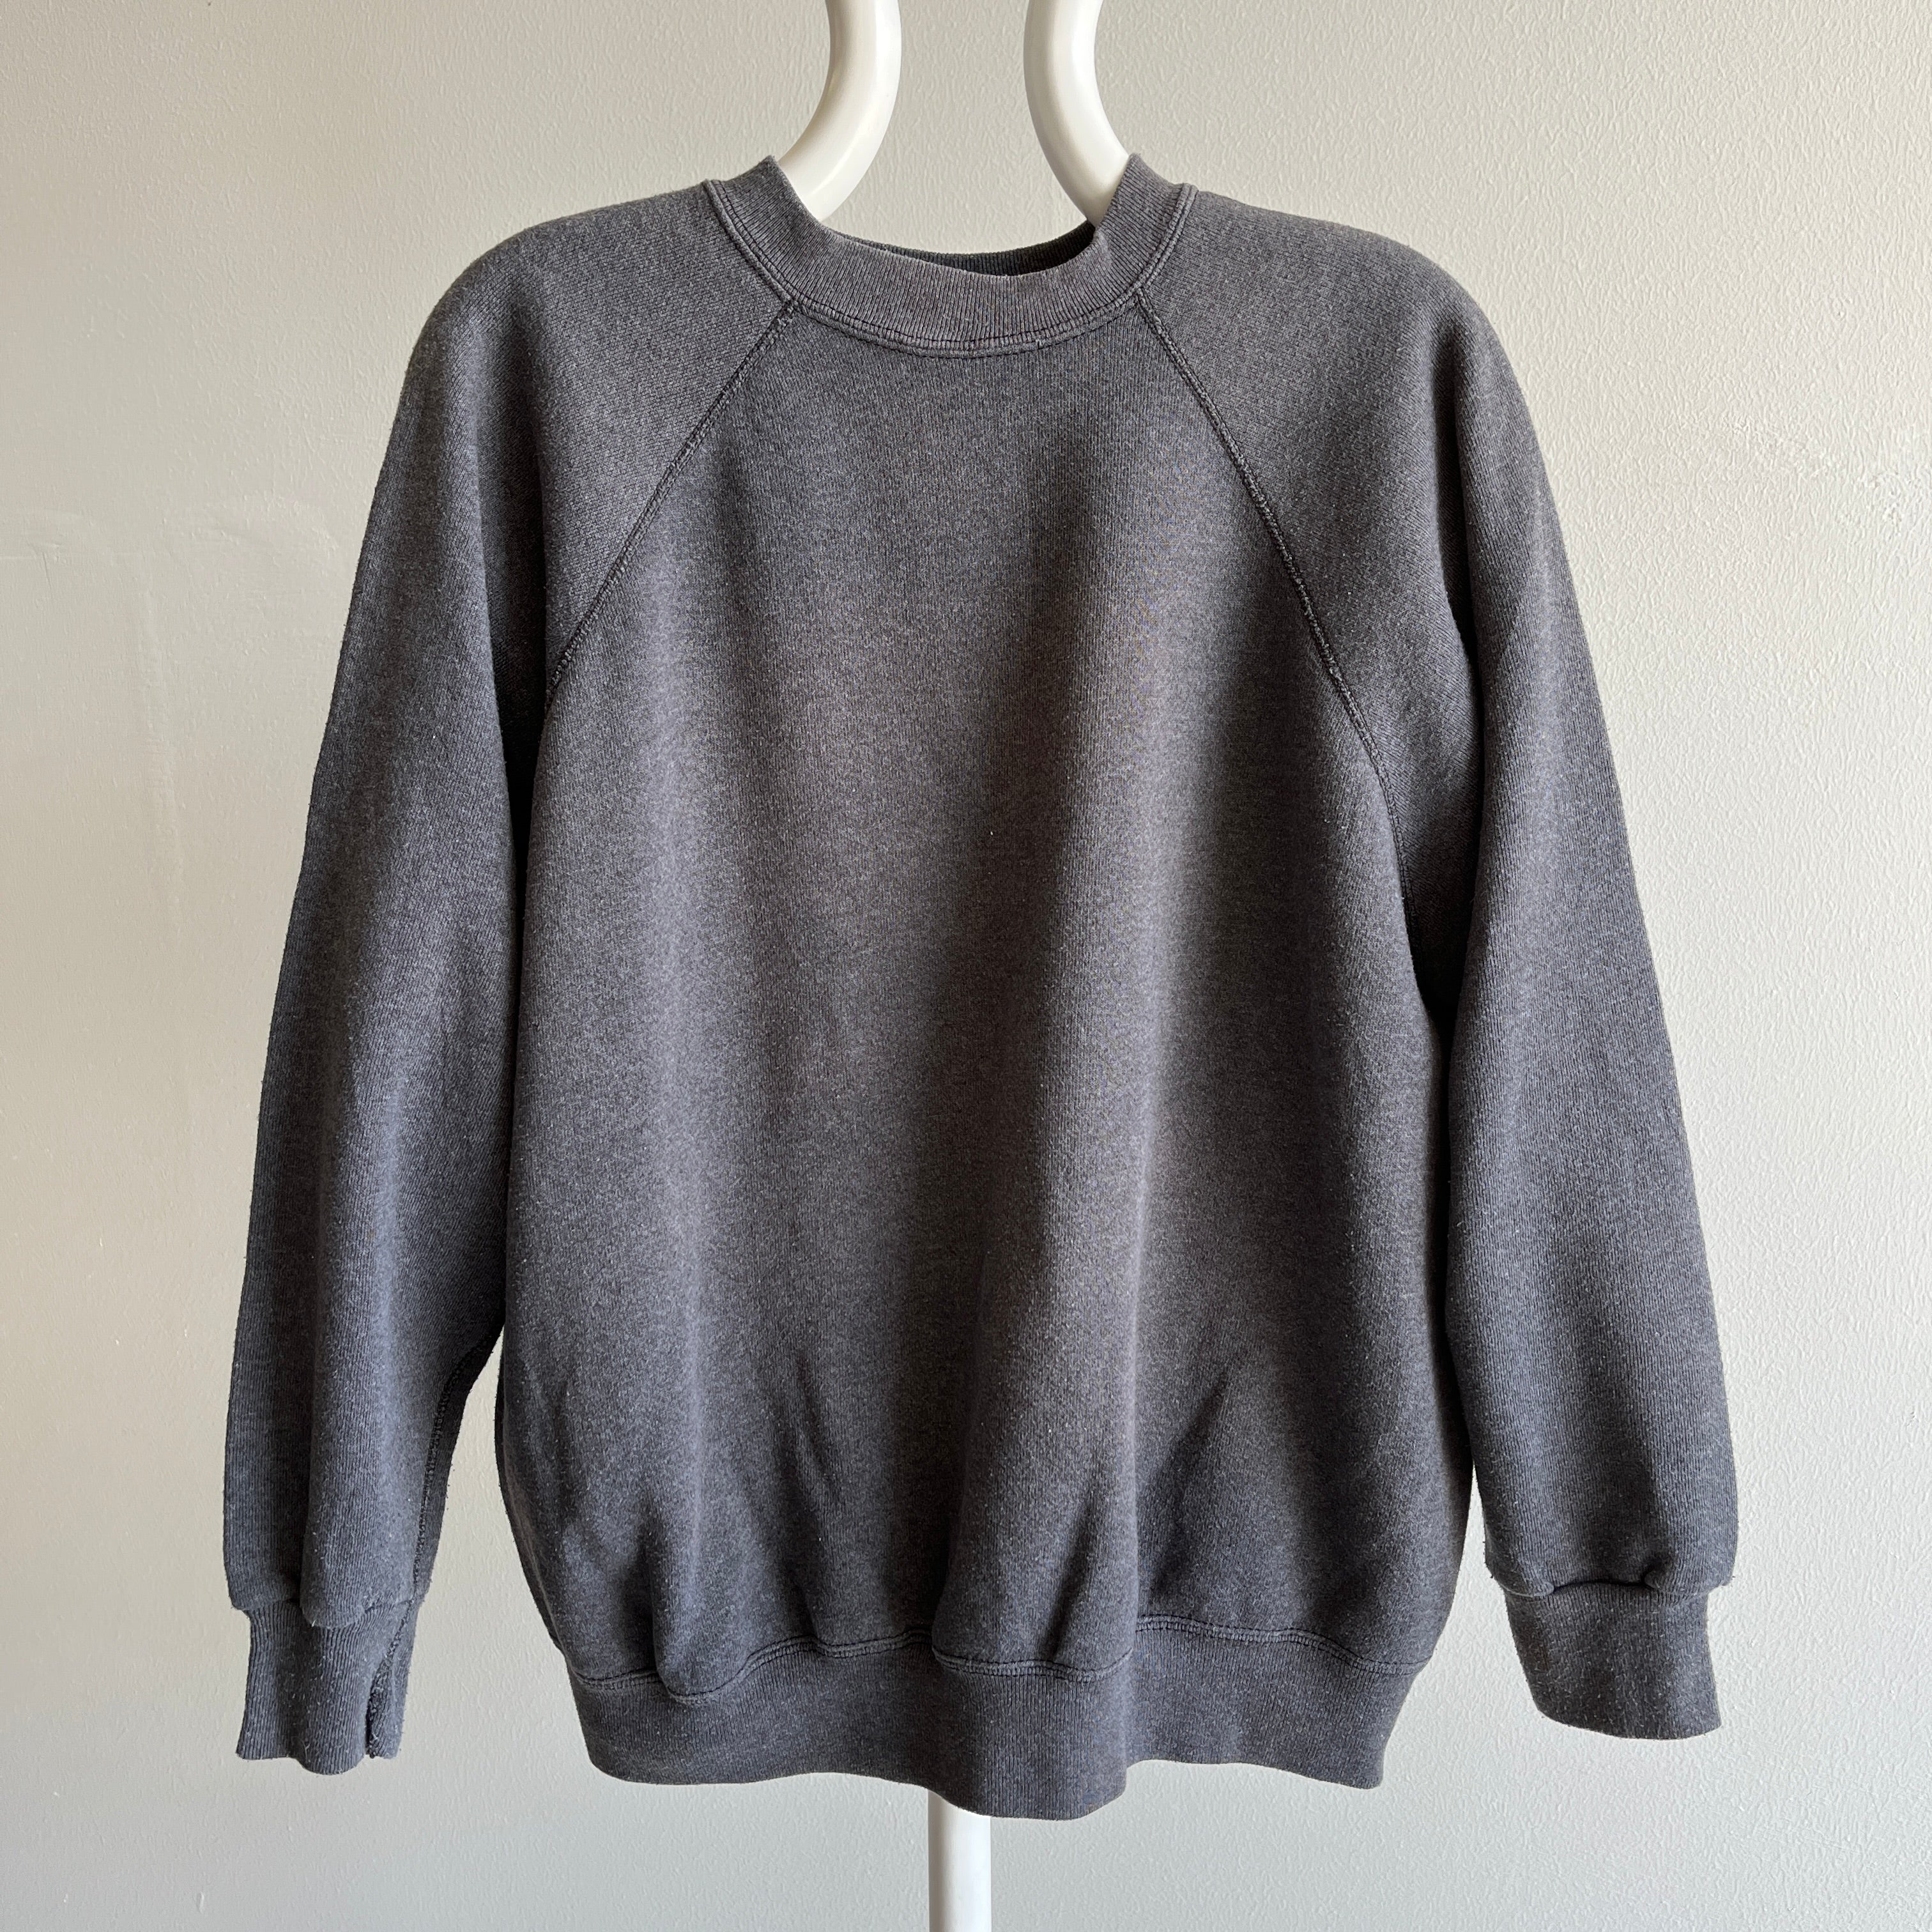 1980s Sweats Appeal Dark Gray Cozy Sweatshirt by Tultex